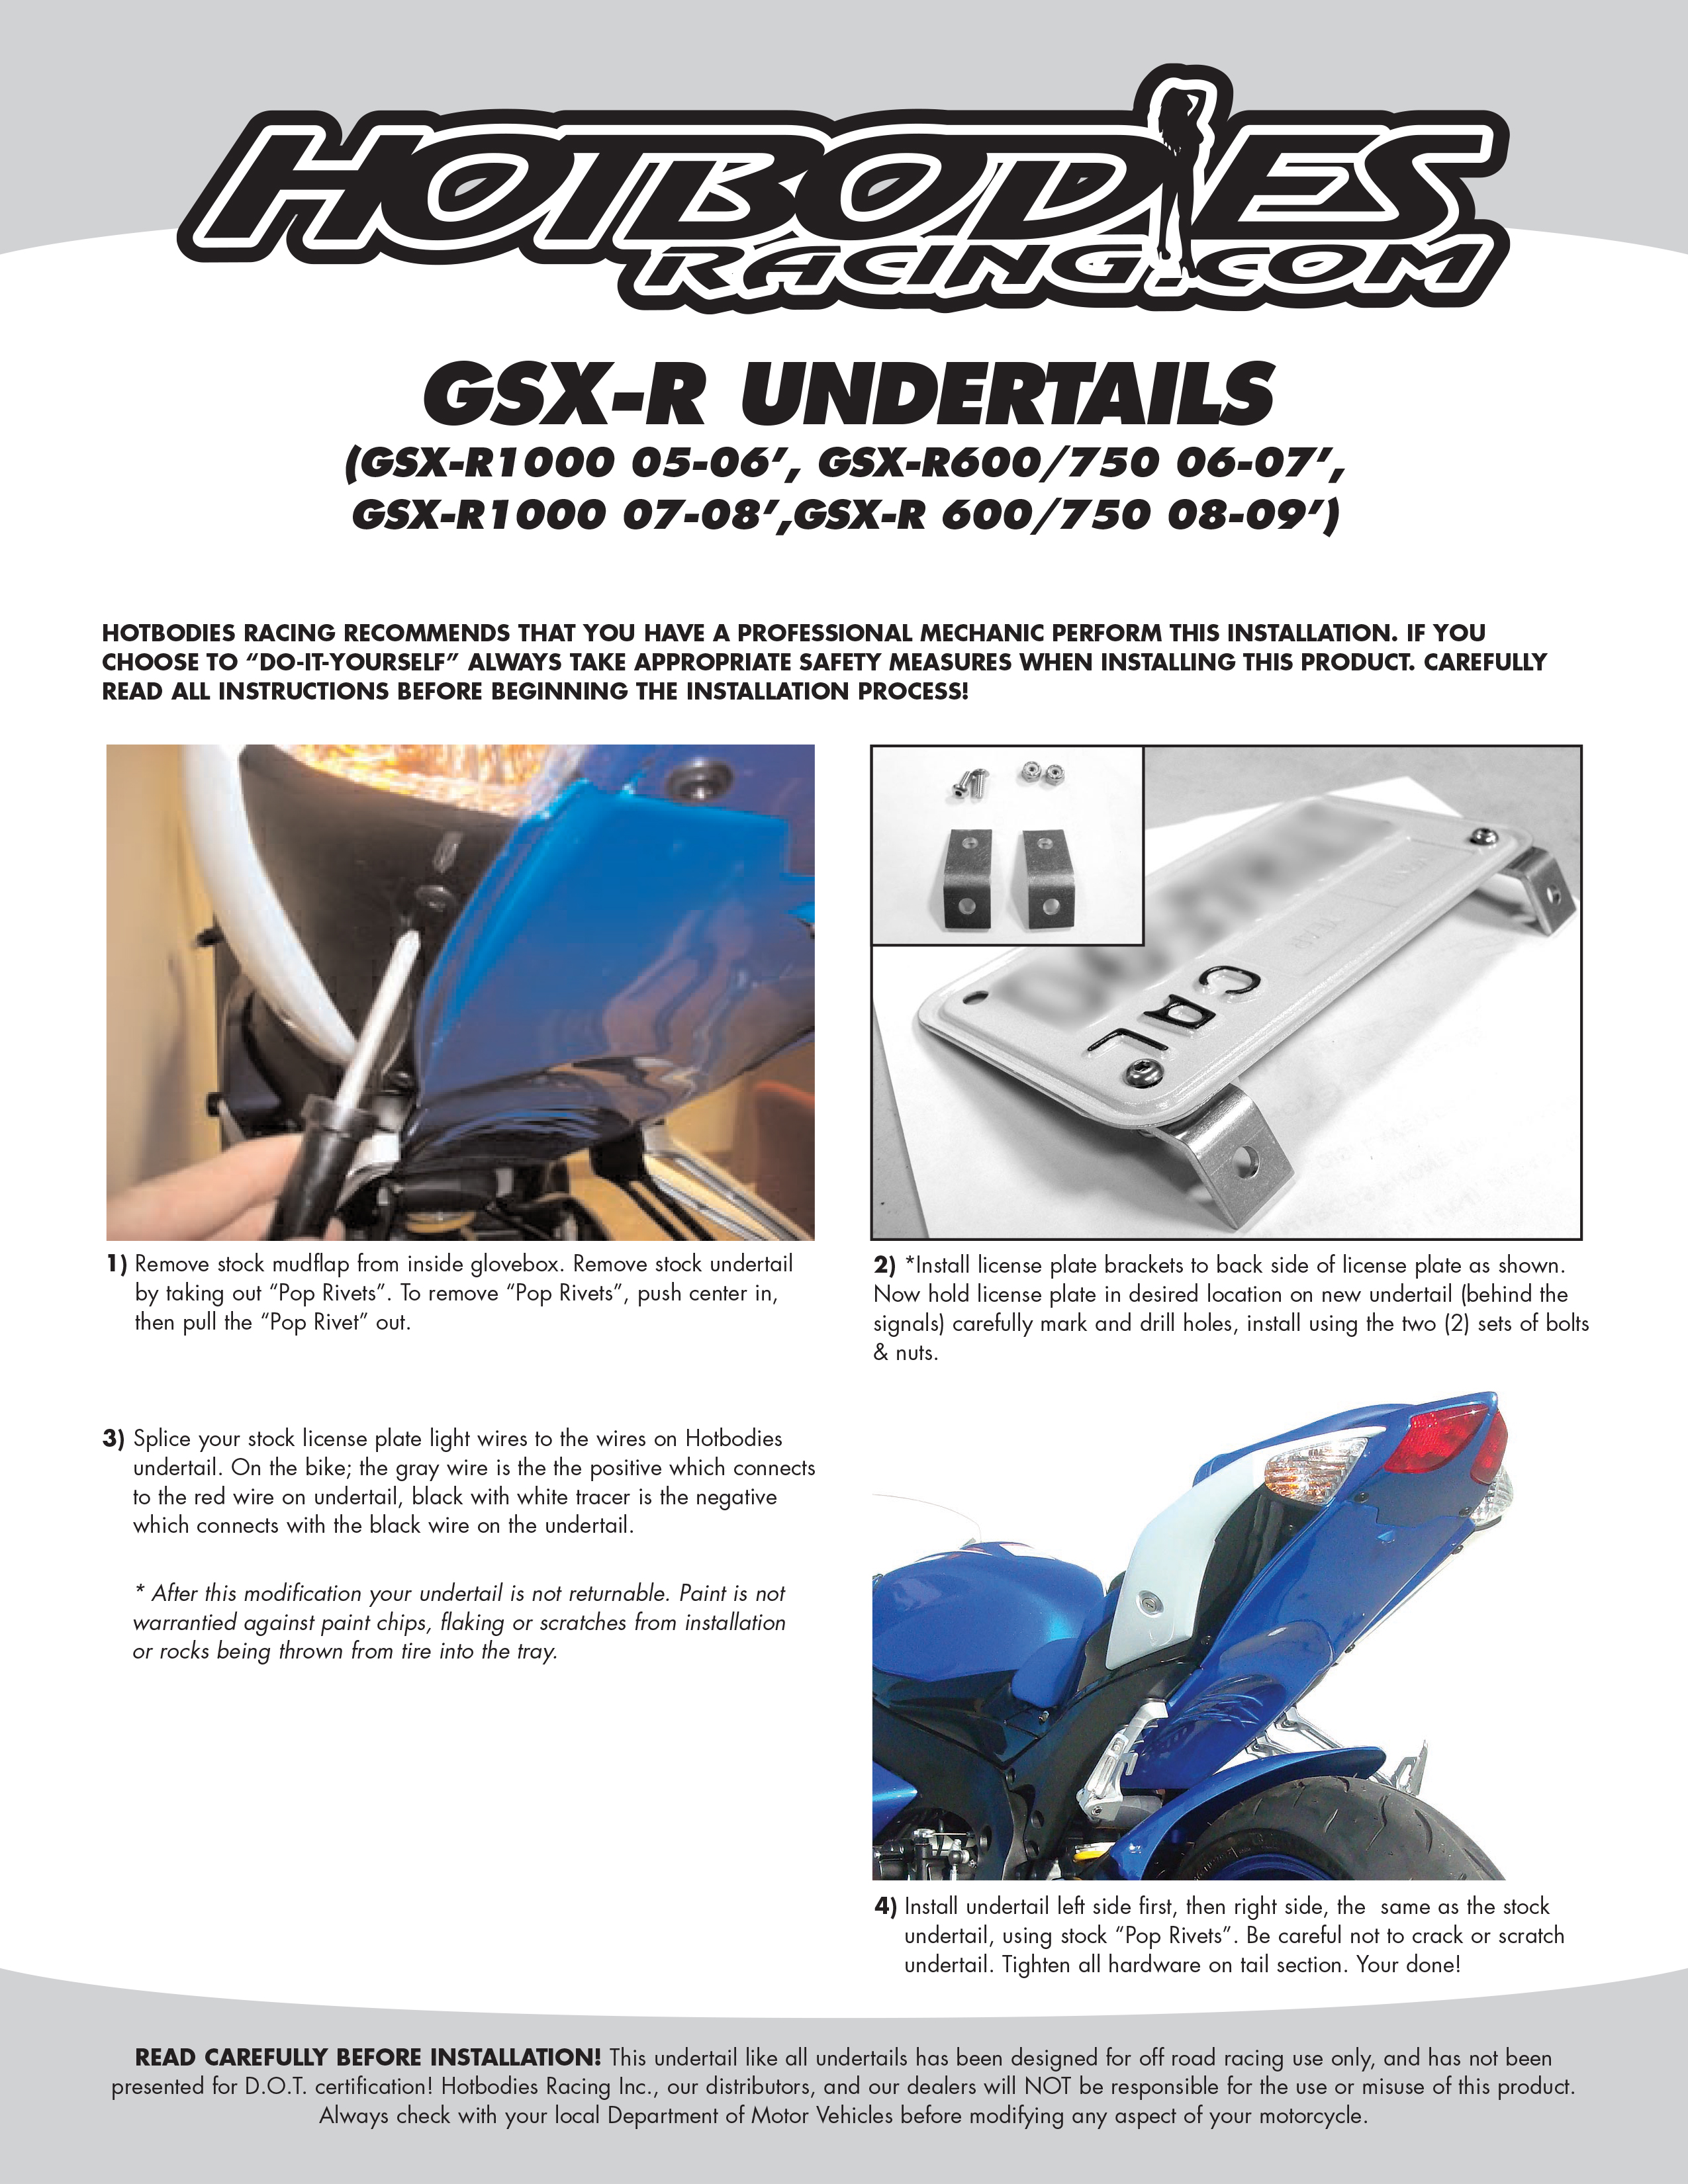 GSX-R 600/750 2008-10 Undertail Installation